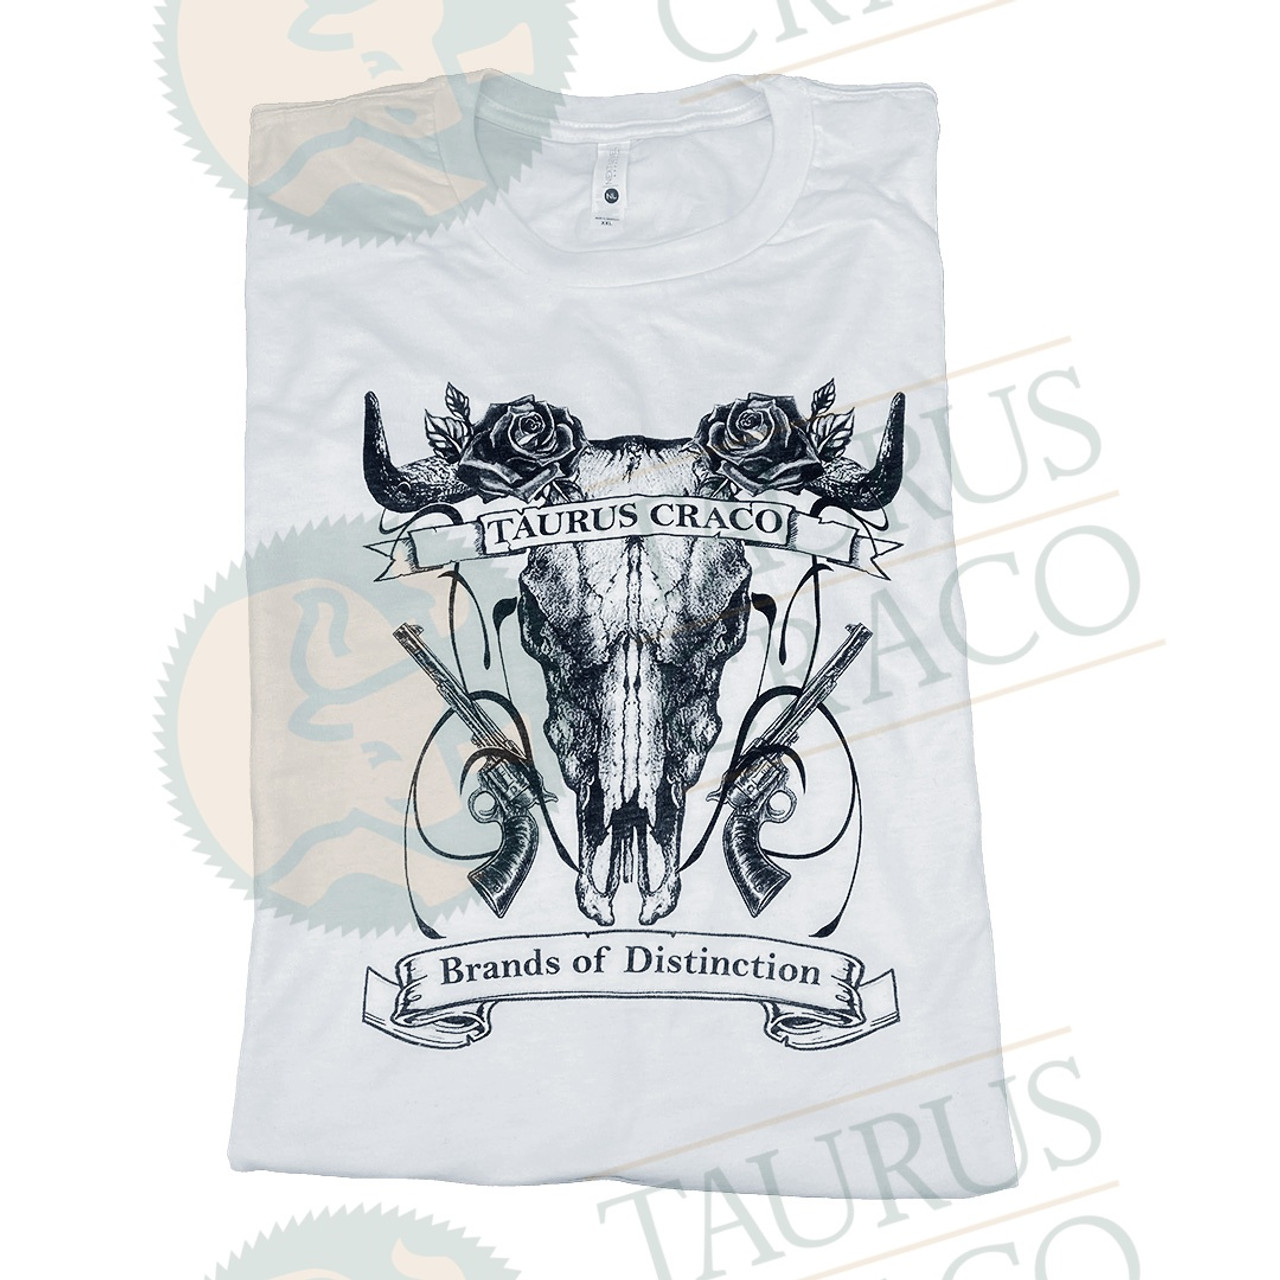 Image of Taurus Craco white t shirt.